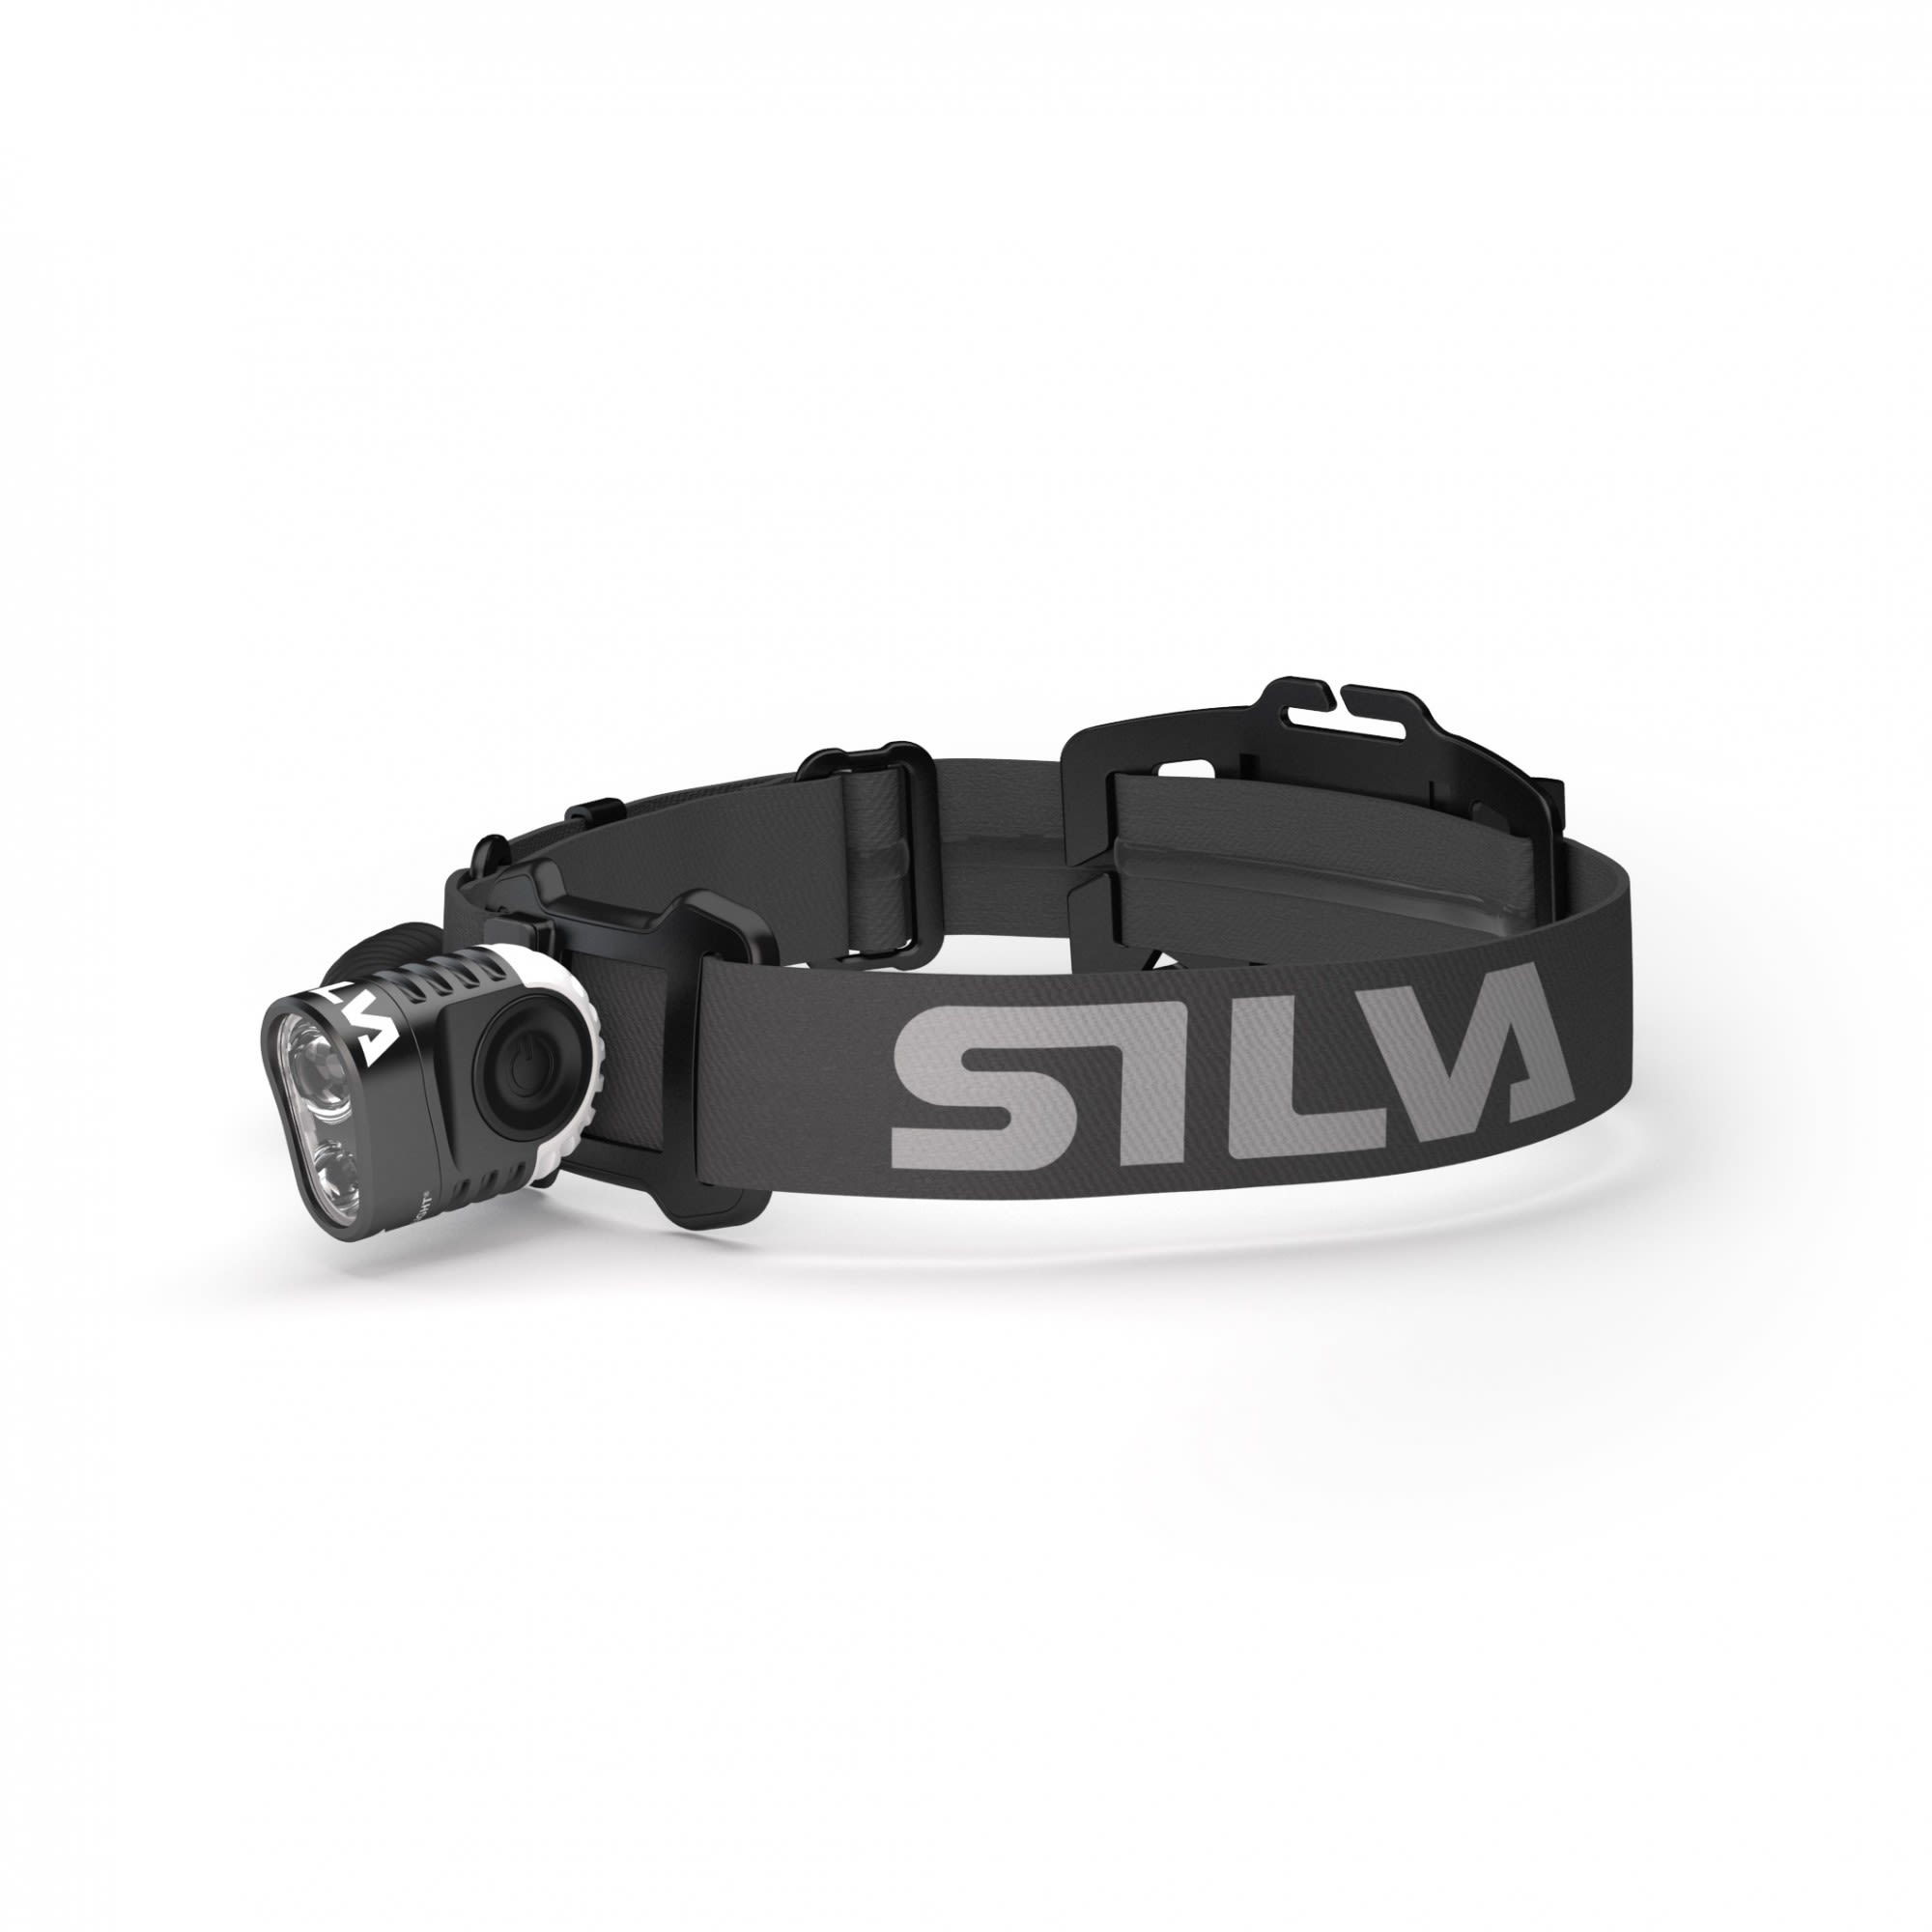 Silva Trail Speed 5X Schwarz- Stirnlampen- Grsse One Size - Farbe Black unter Silva